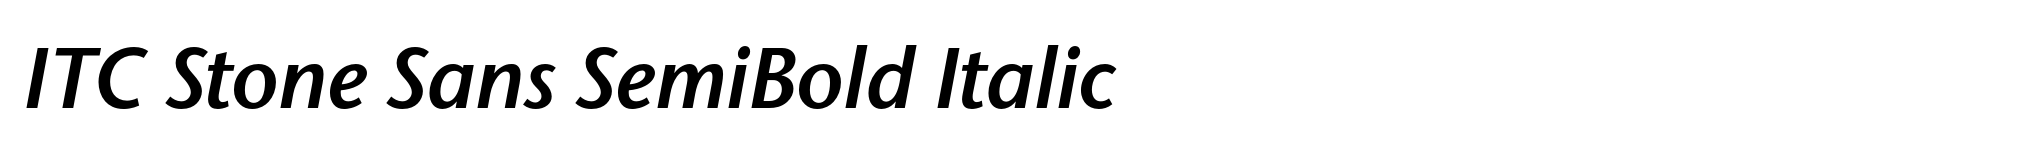 ITC Stone Sans SemiBold Italic image